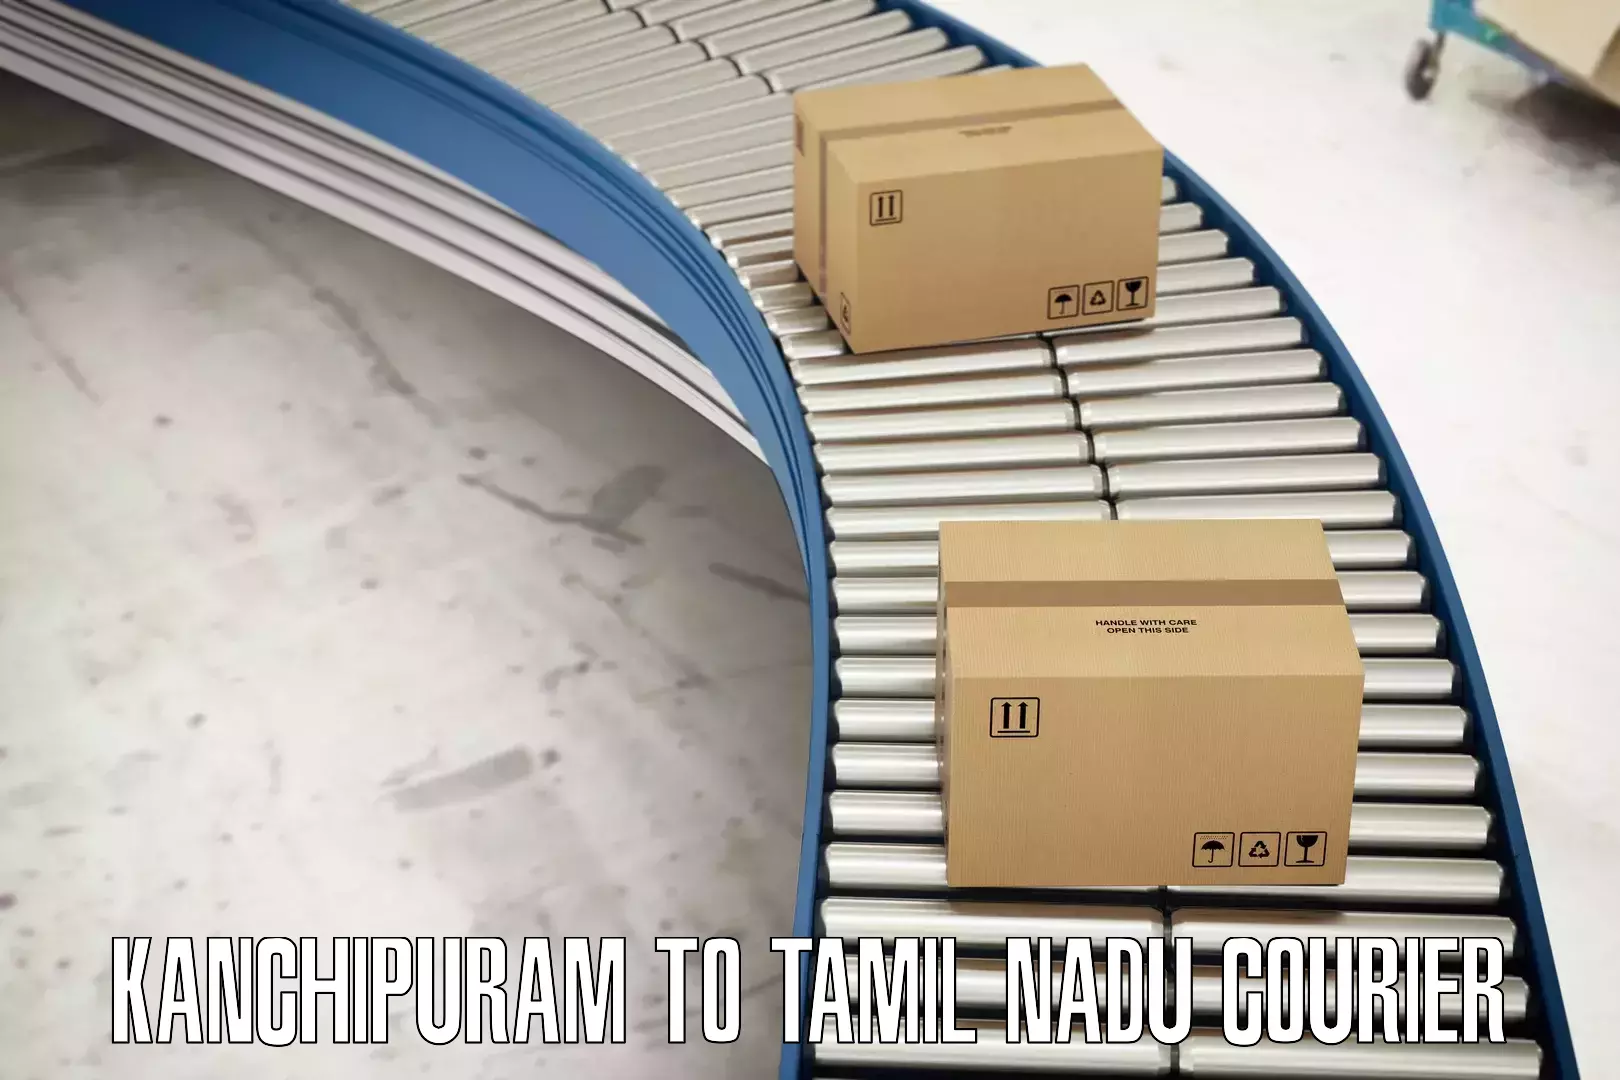 Customer-oriented courier services Kanchipuram to Perundurai